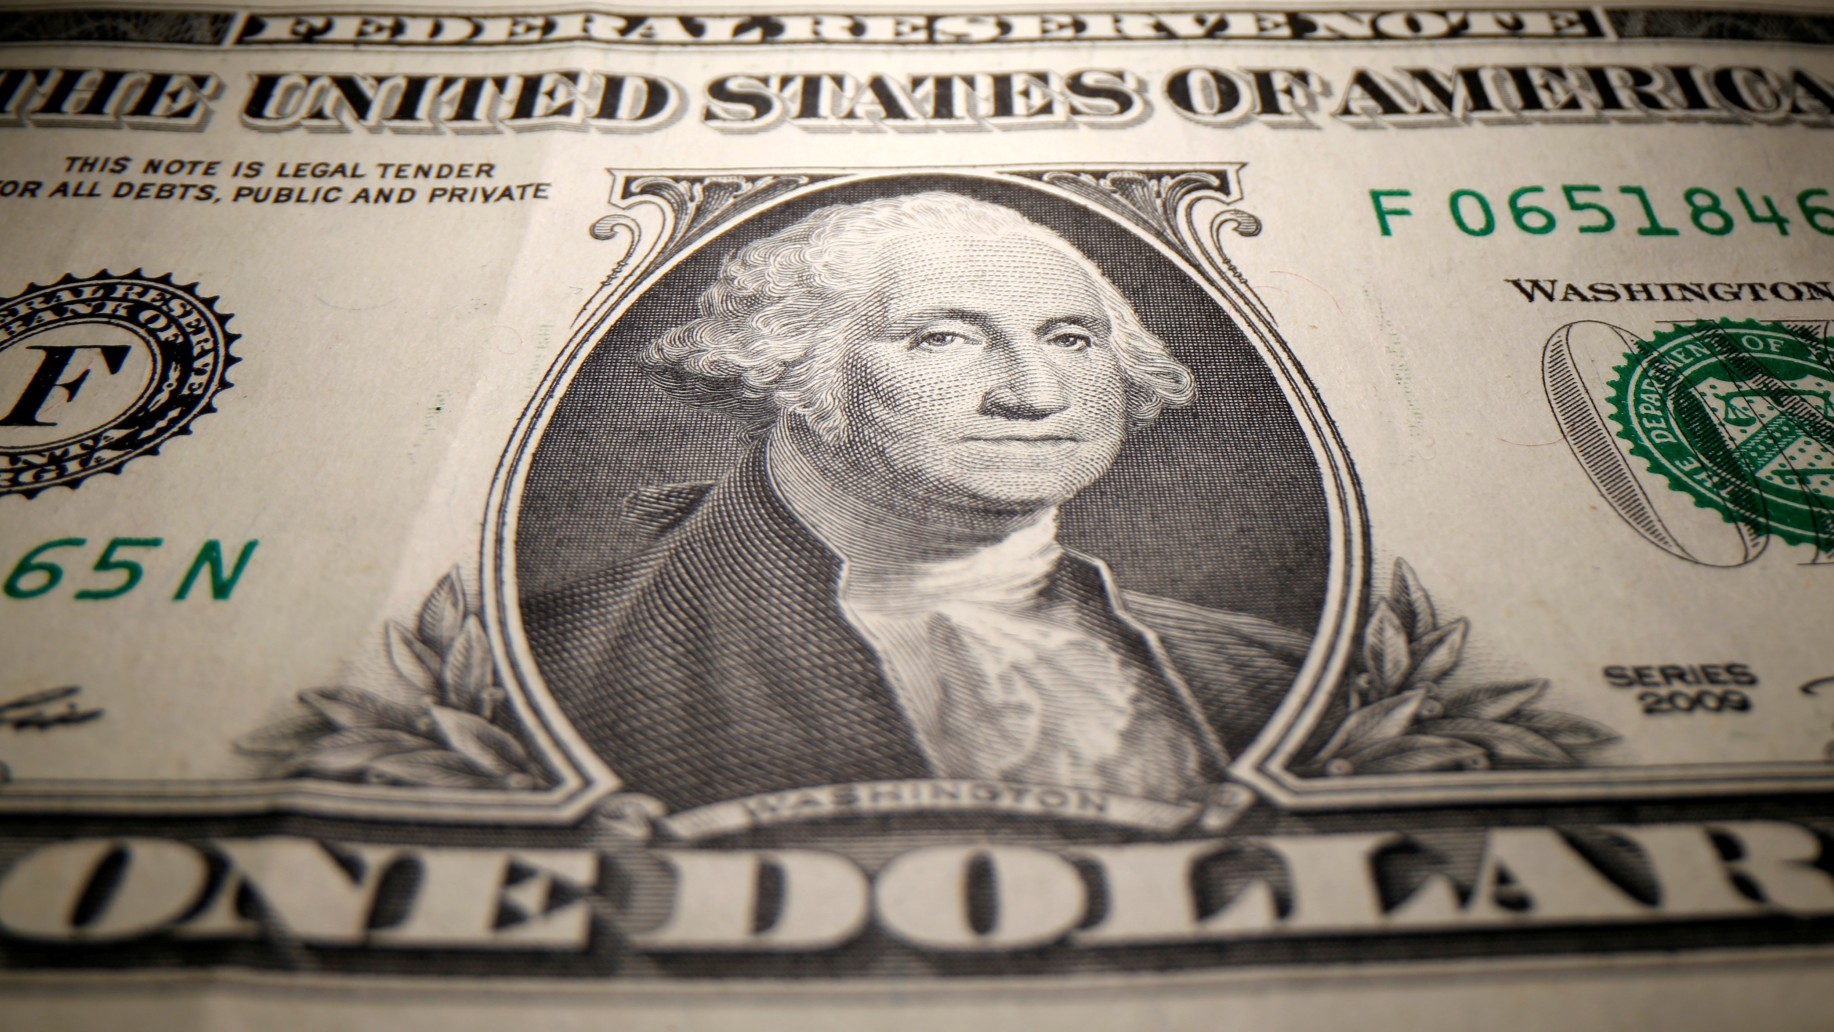 Economistas estiman que venta del dólar podría disminuir a ¢600 tras anuncio de acuerdo con FMI